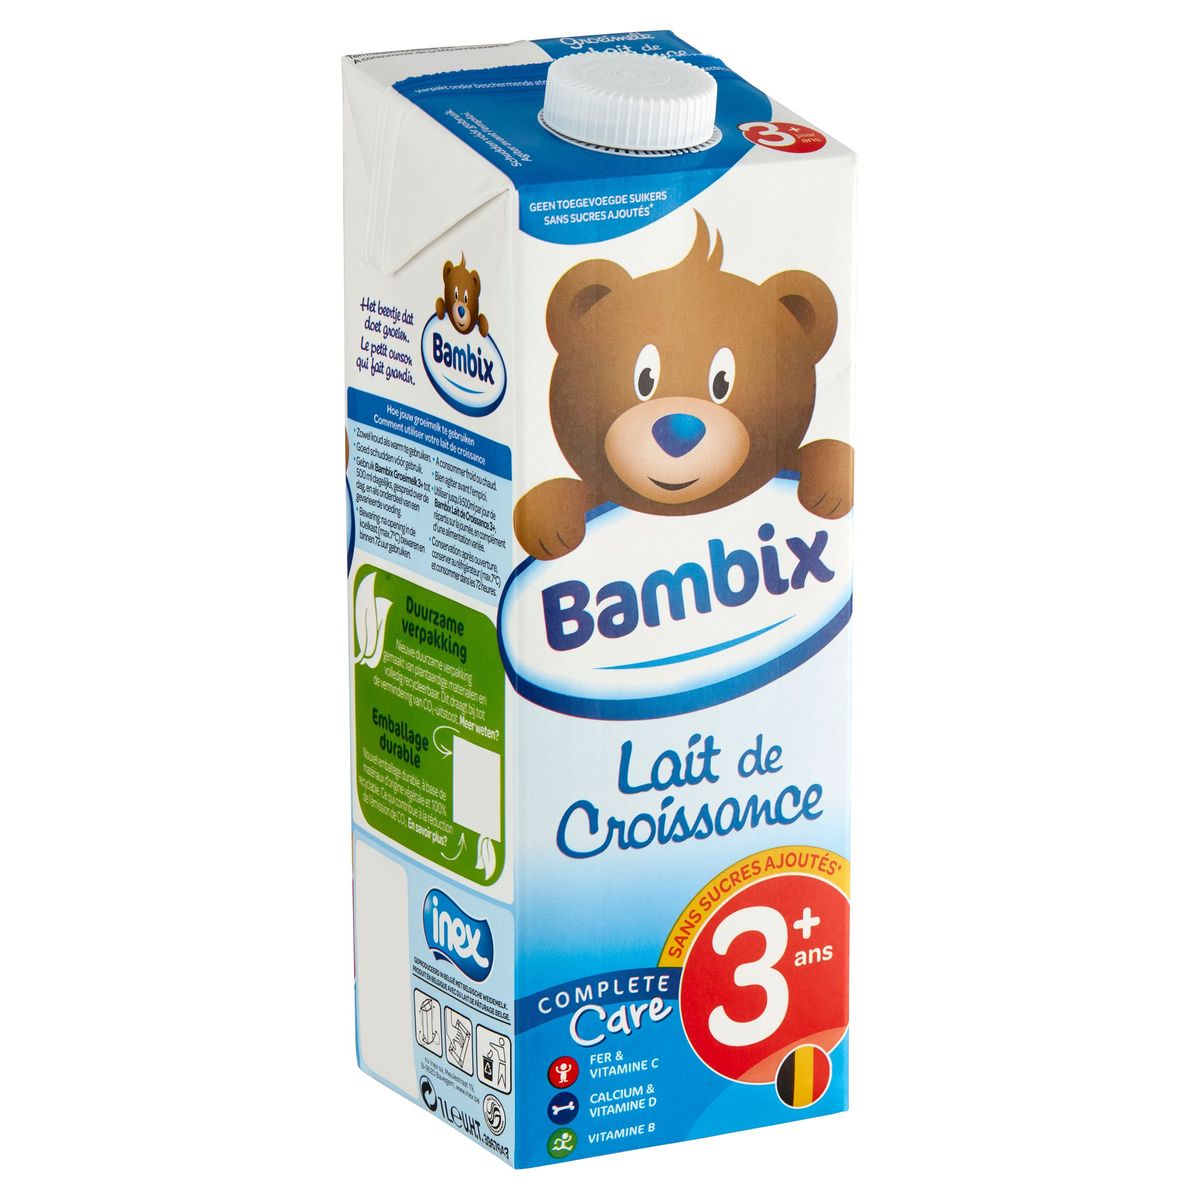 Bambix Lait de Croissance Complete Care 3+ Ans 1 L